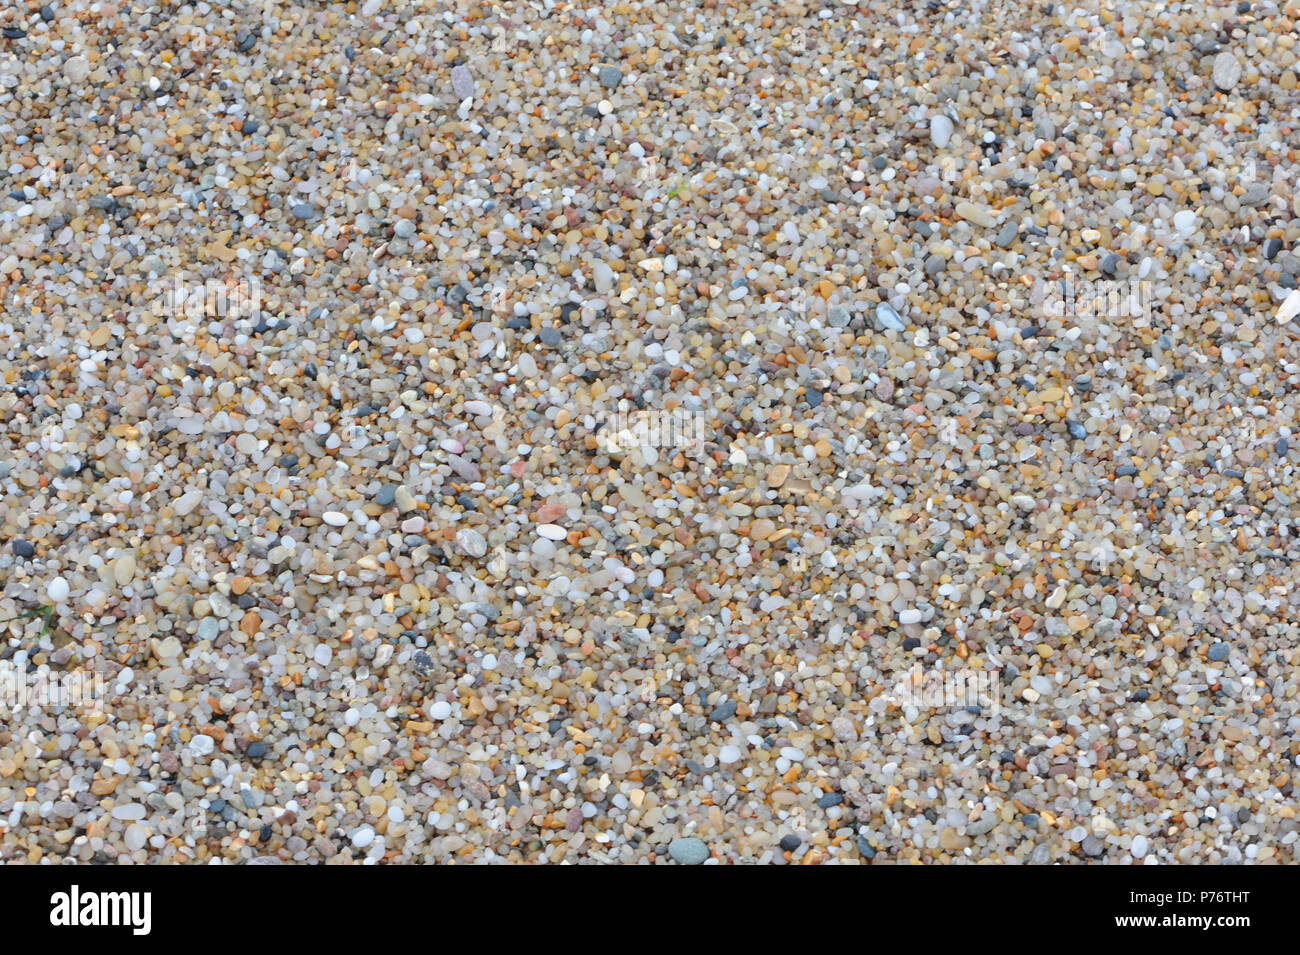 Molto sabbia grossa o molto piccola ghiaia fatta di piccoli ciottoli sulla spiaggia a Ballycastle. Ballycastle, Antrim, Irlanda del Nord. Foto Stock